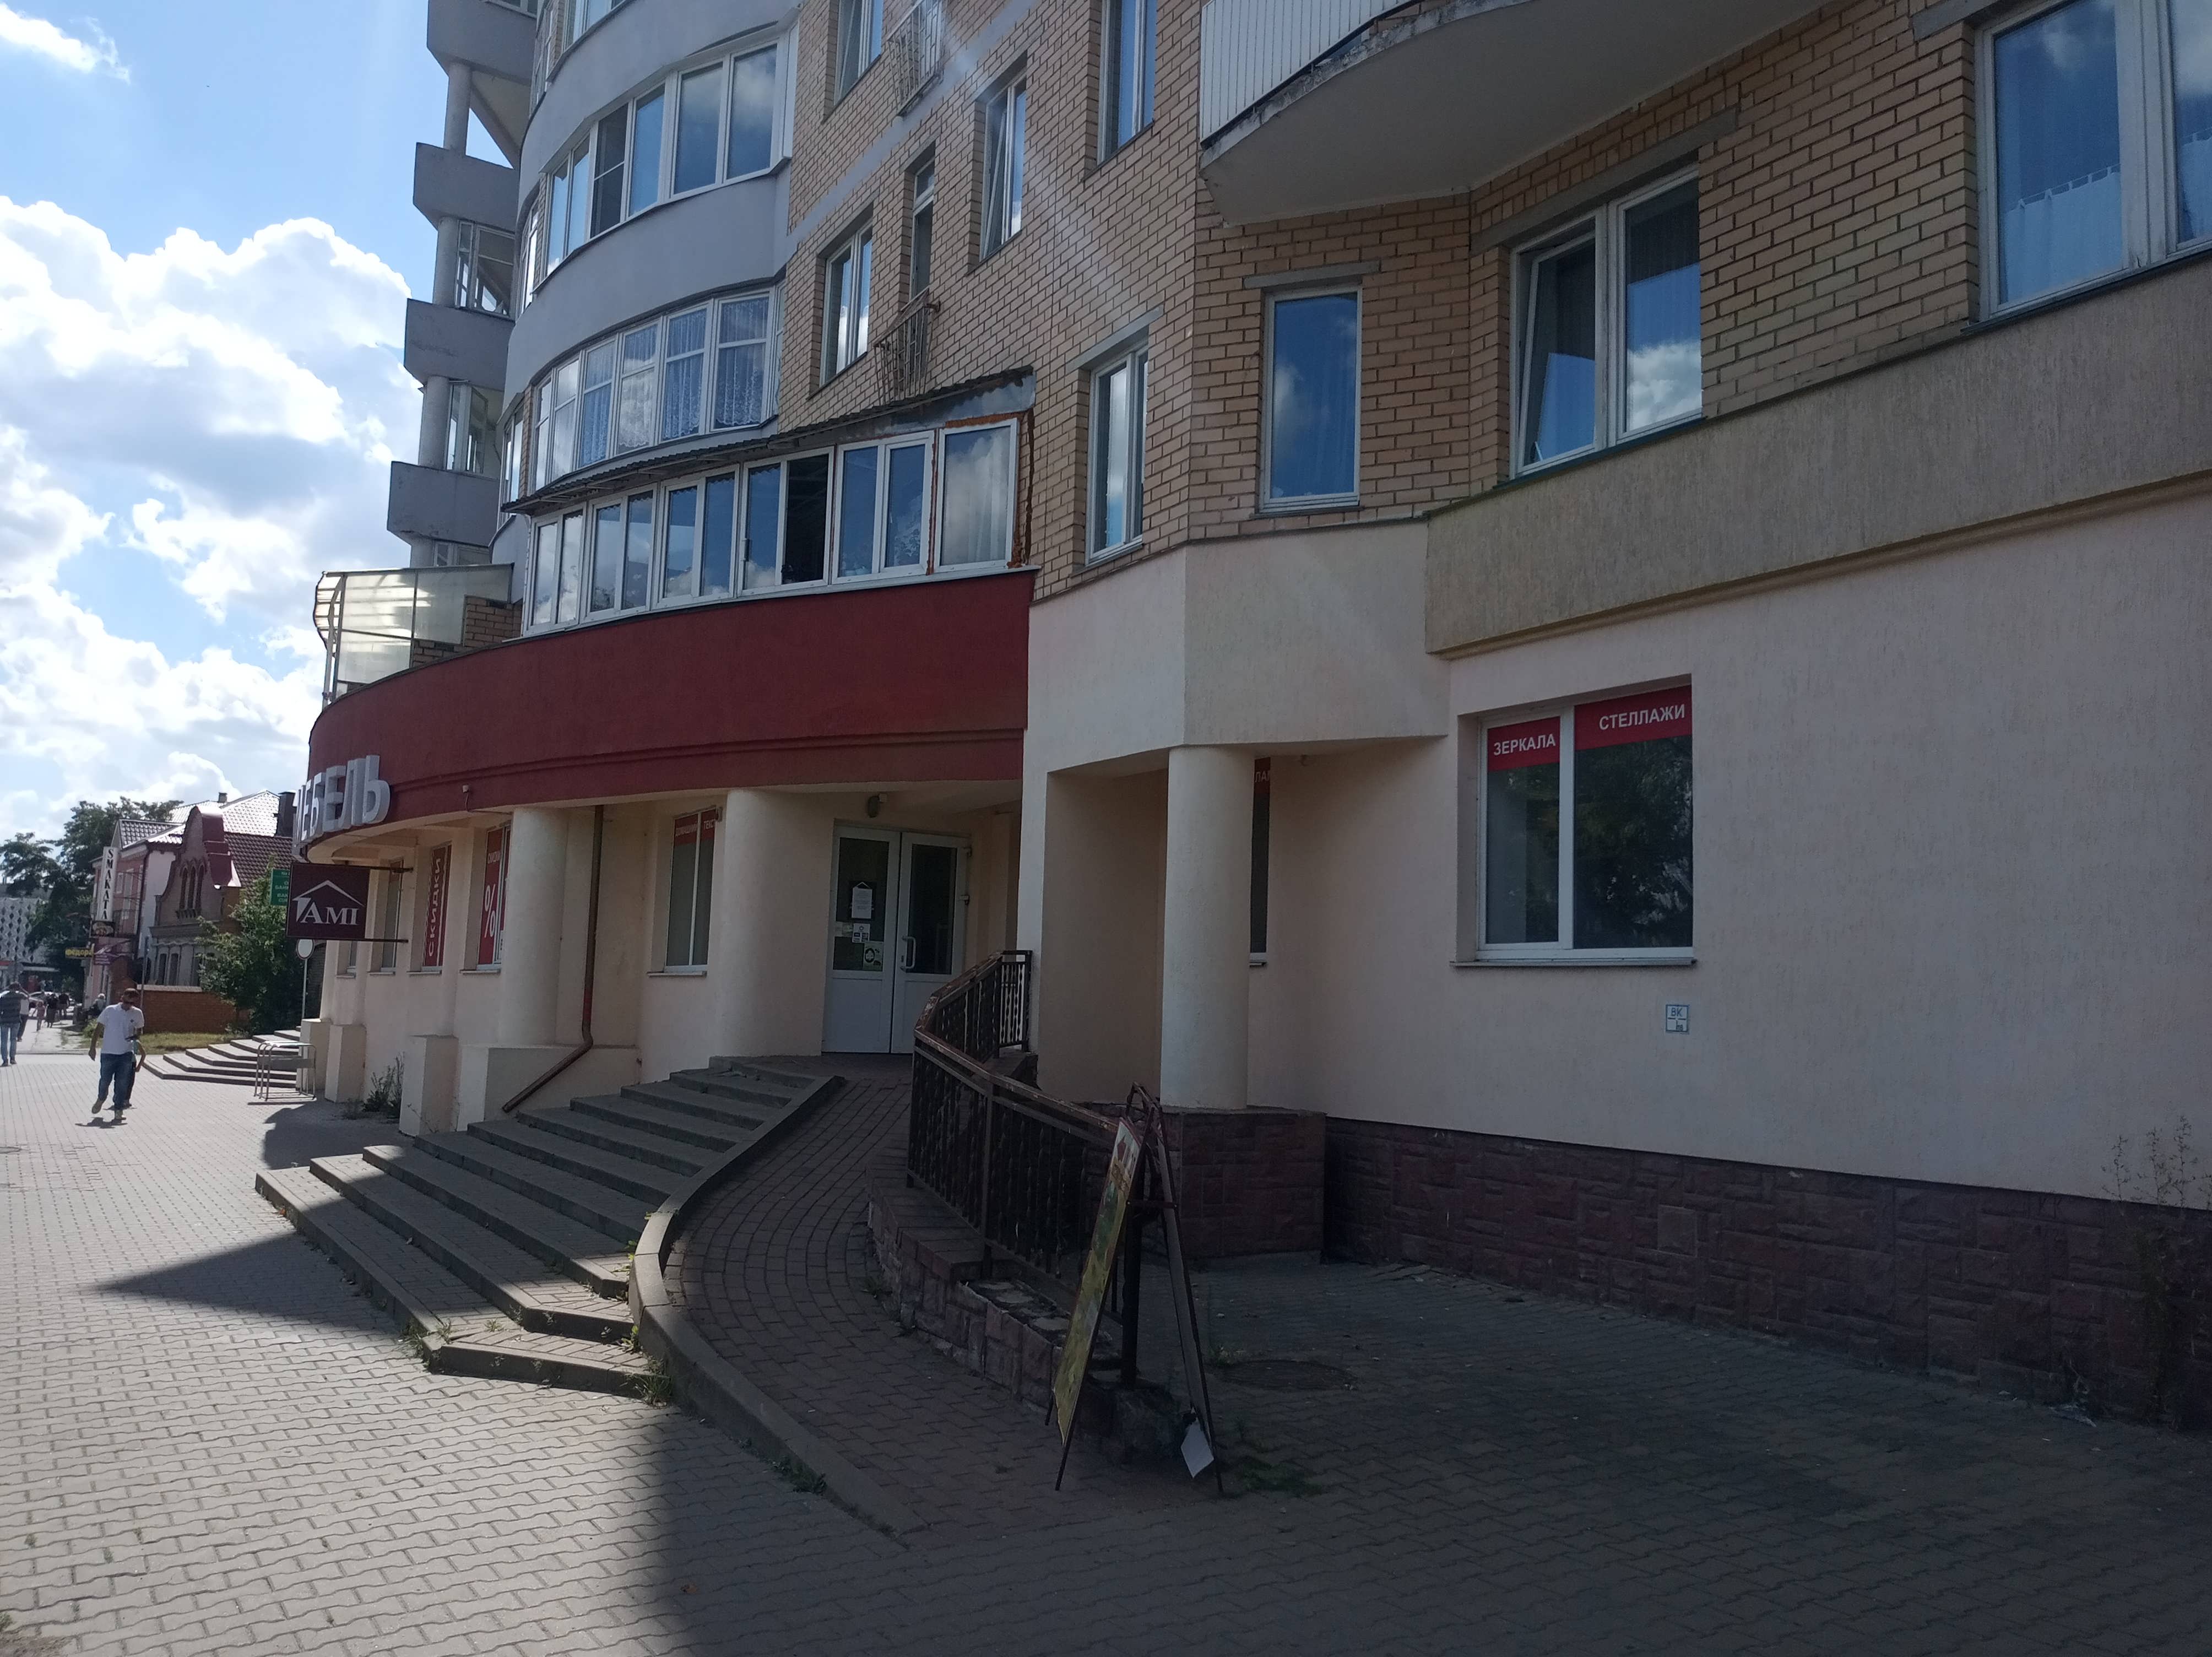 Торговое помещение 409м² в центре города по адресу г.Барановичи, ул.Димитрова, 15-72. Фасад сбоку